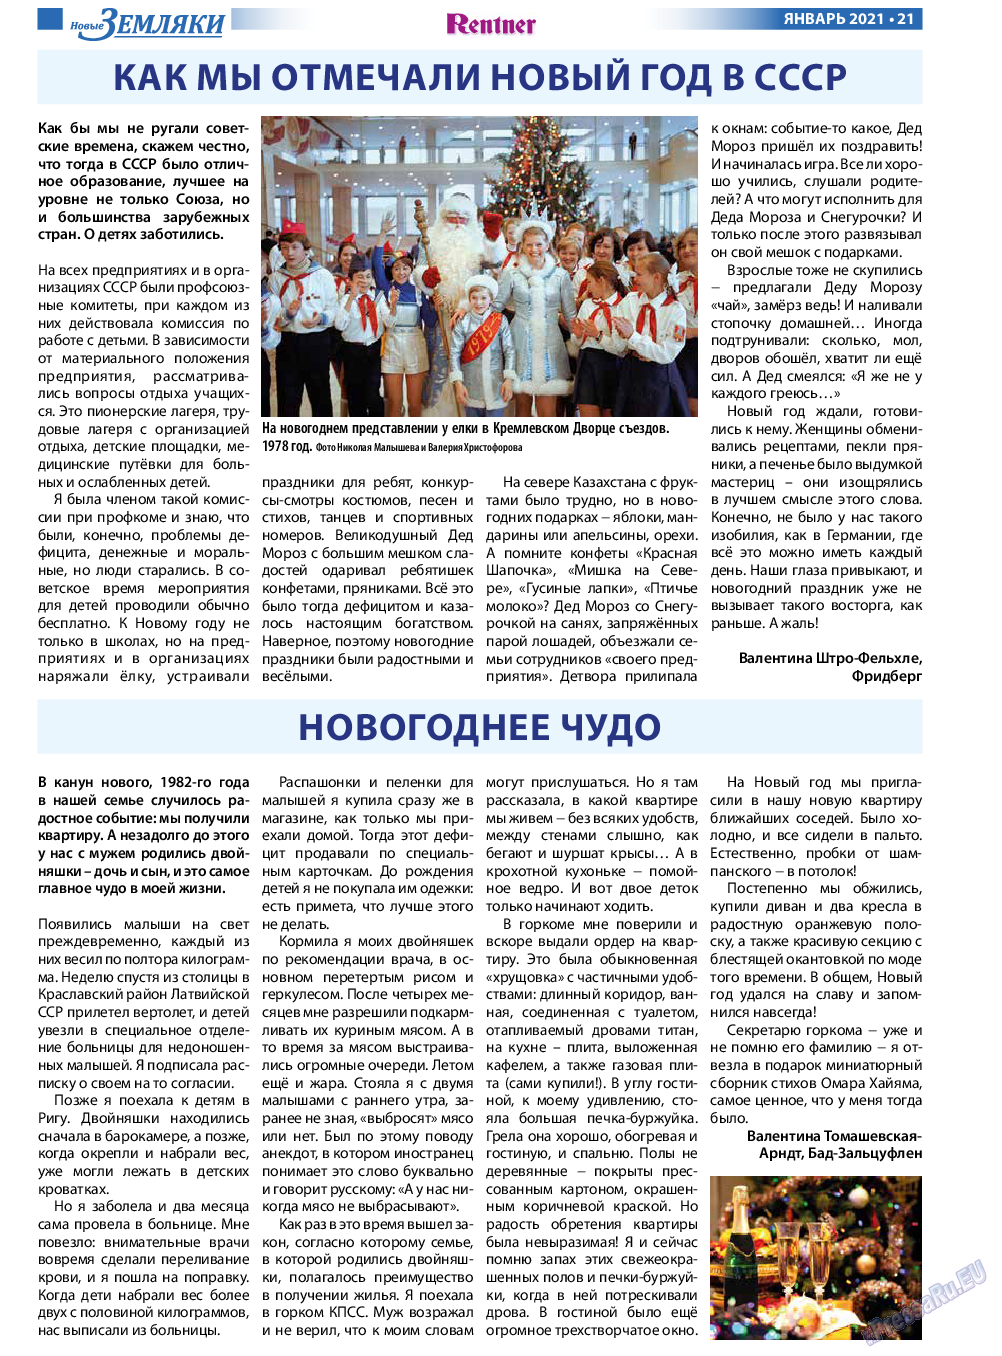 Новые Земляки, газета. 2021 №1 стр.21